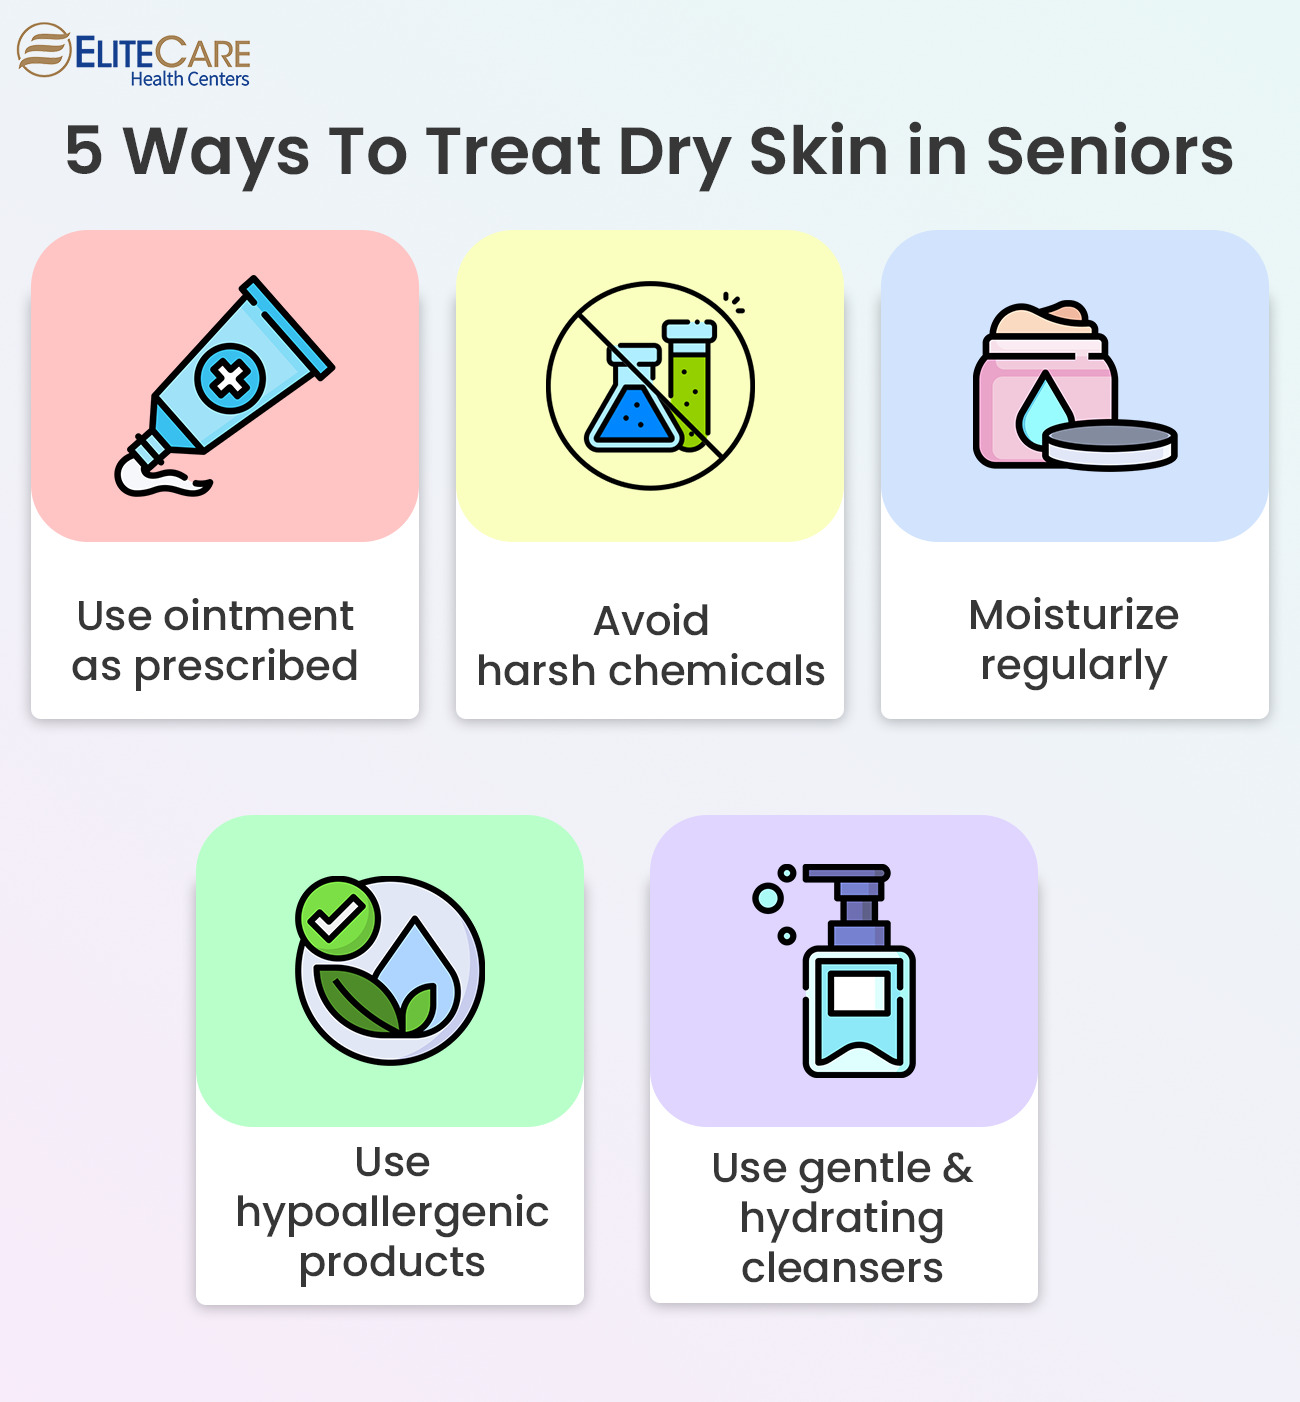 5 Ways to Treat Dry Skin in Seniors